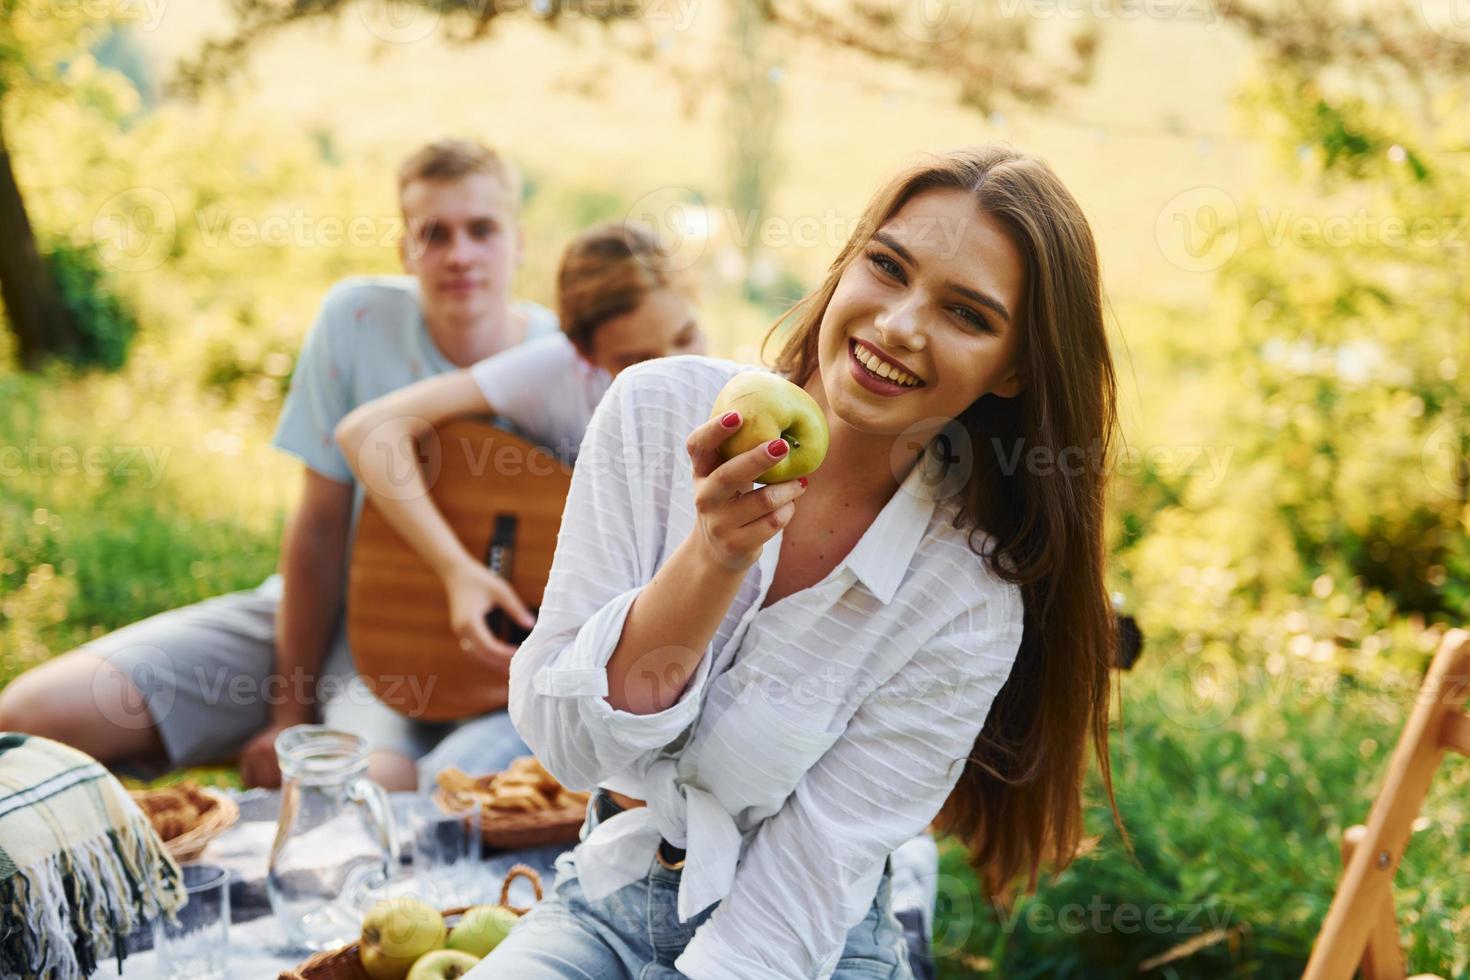 vrouw eet appel. groep van jong mensen hebben vakantie buitenshuis in de Woud. opvatting van weekend en vriendschap foto